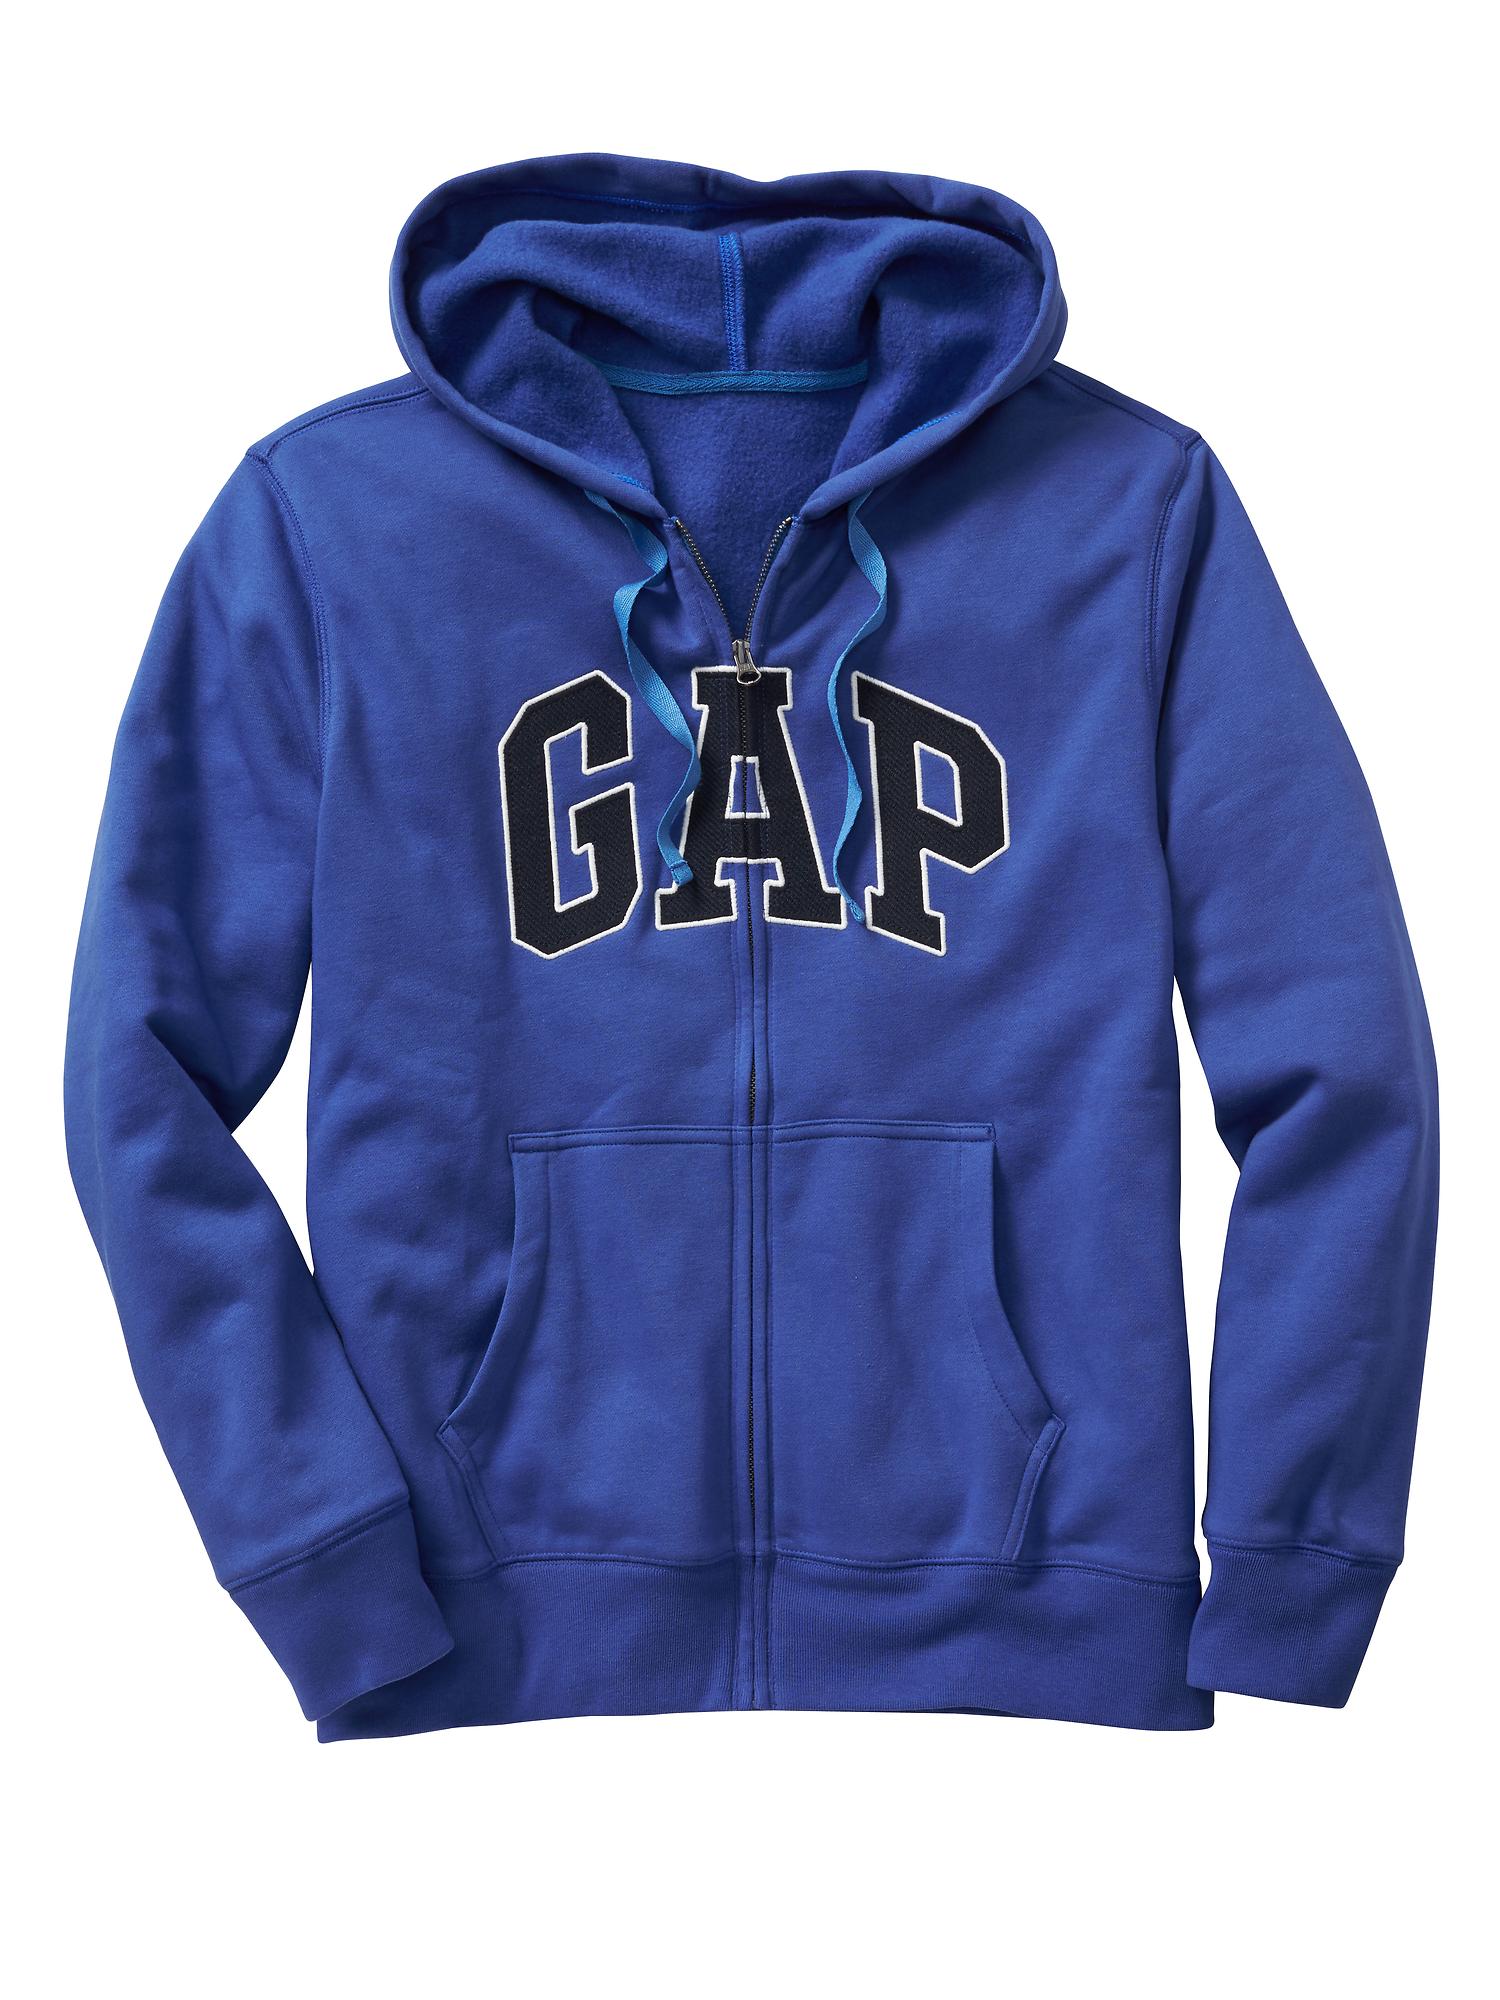 Gap Factory Men's Gap Logo Zip Hoodie Tapestry Navy Size L